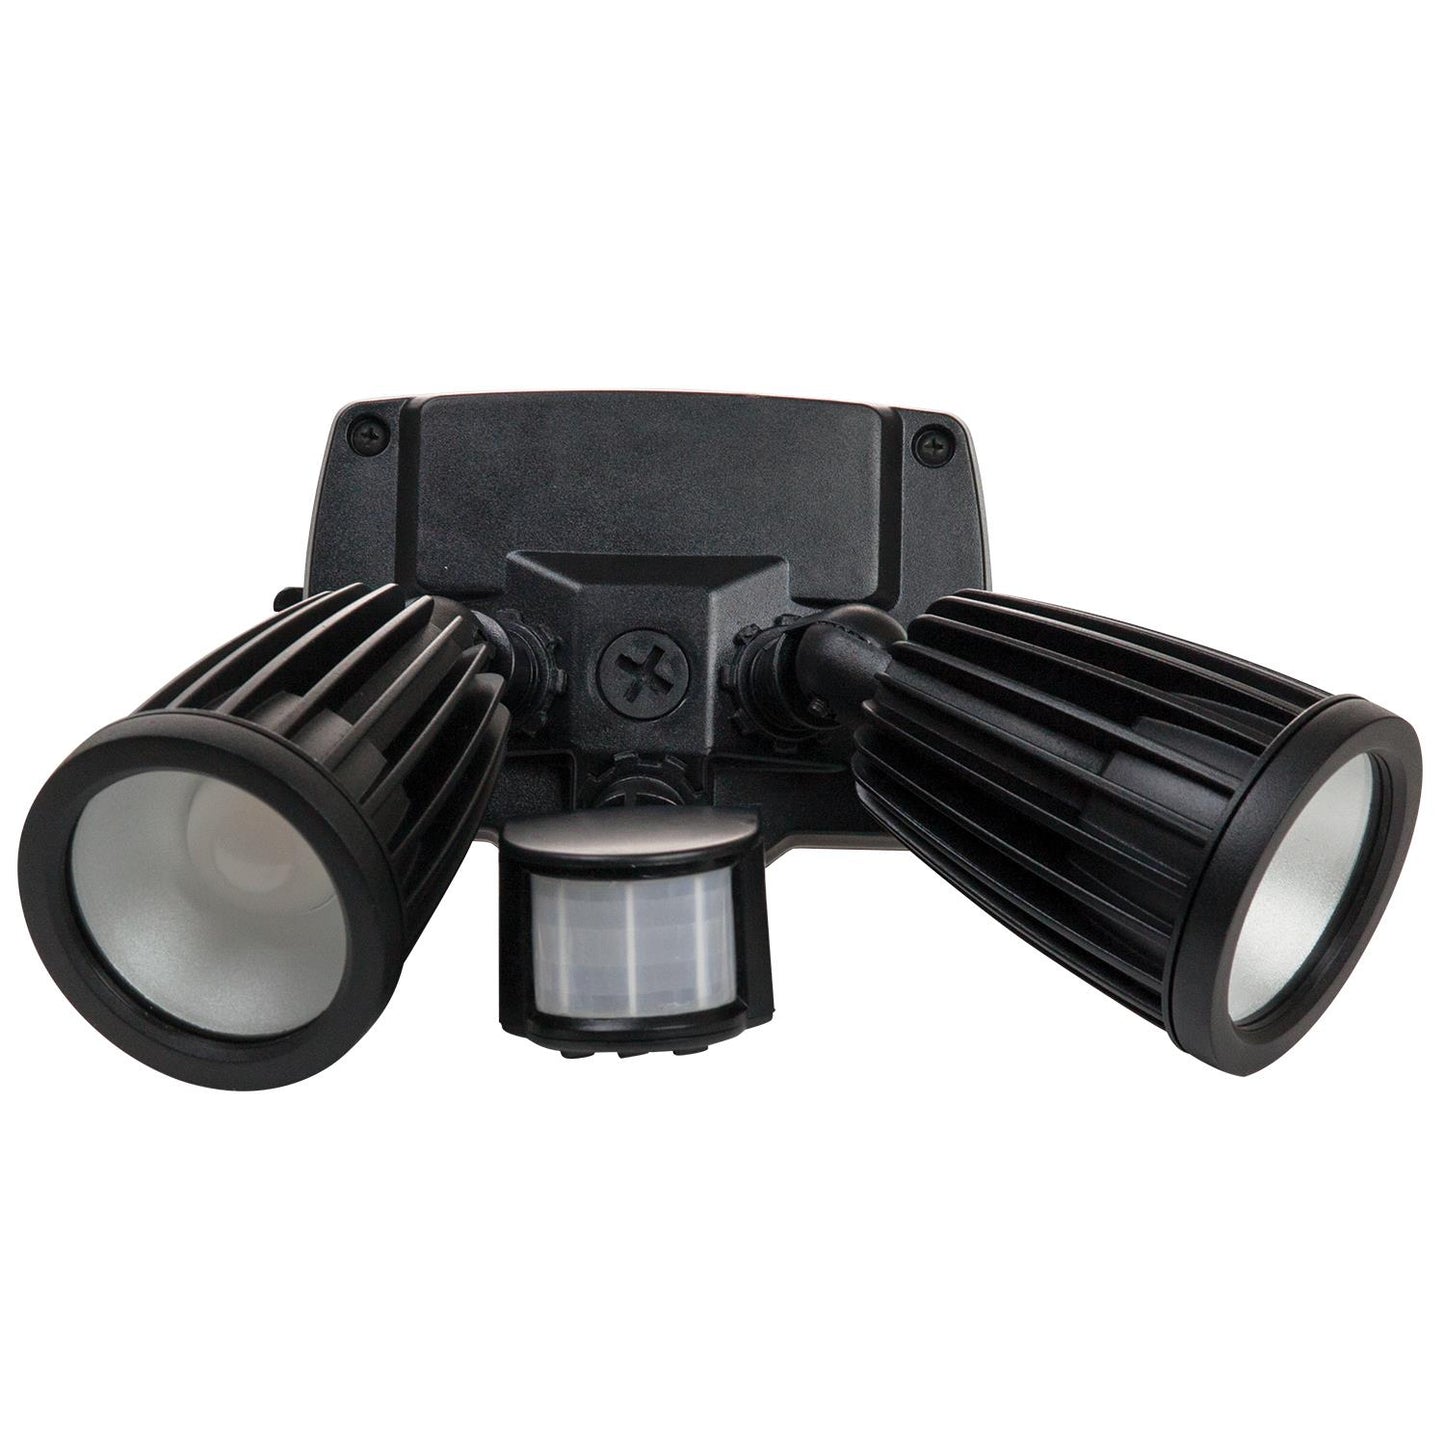 20 Watt 120 Volt LED Motion & Photo Sensors Fixture, Black Finish